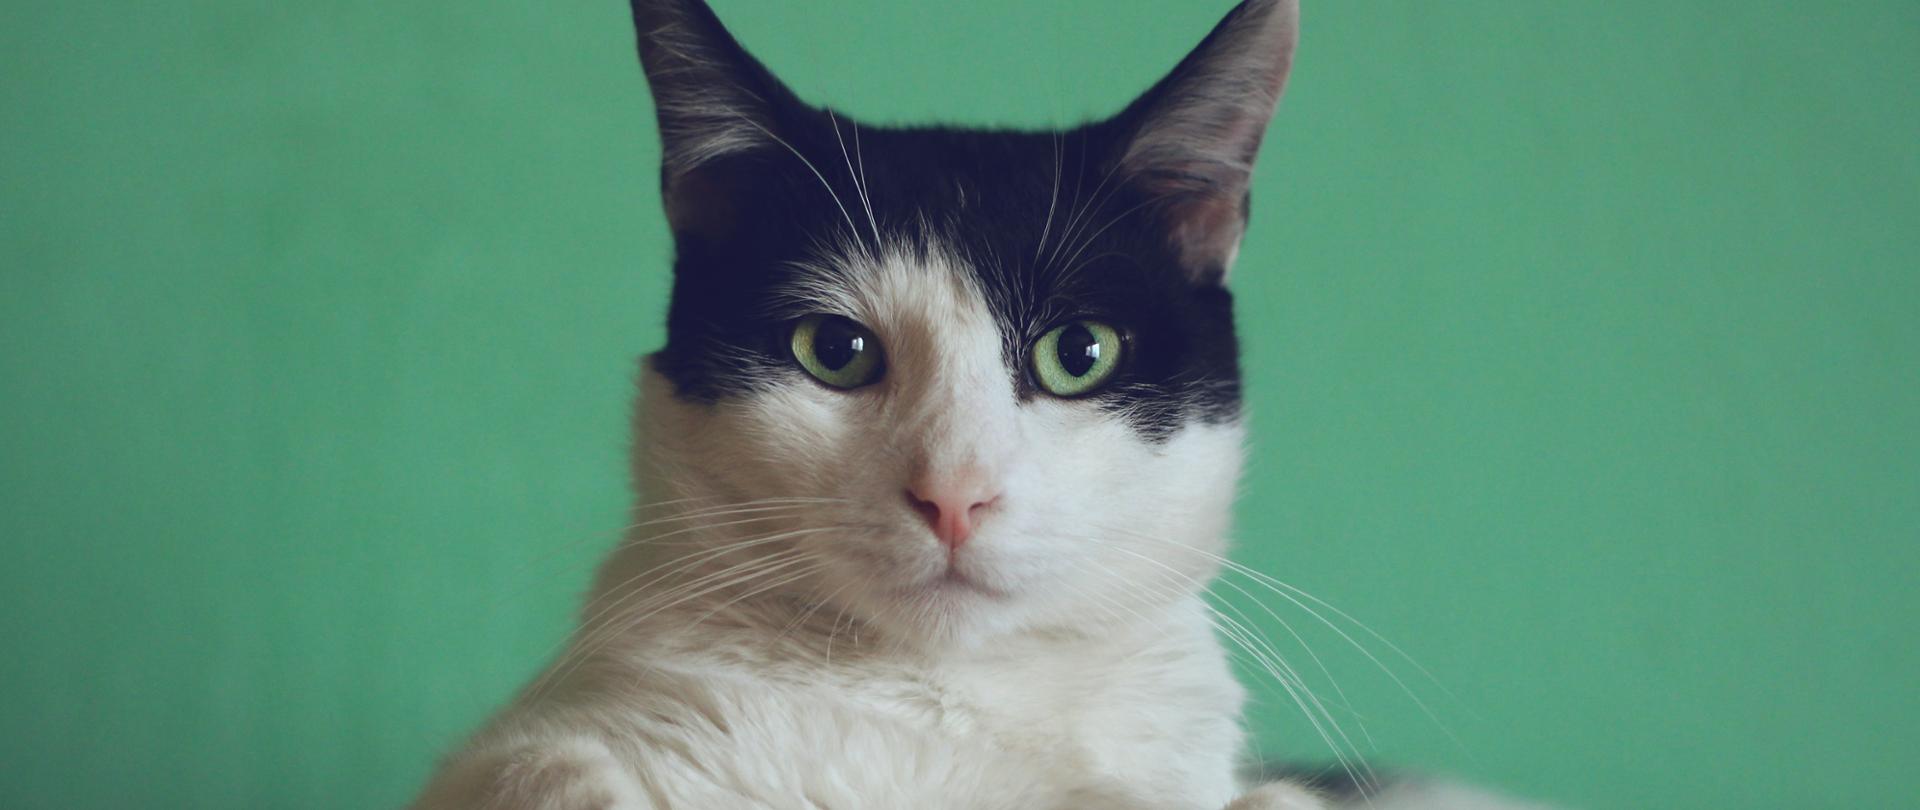 zdjęcie białego kota z czarnym czołem i uszami i z zielonymi oczami